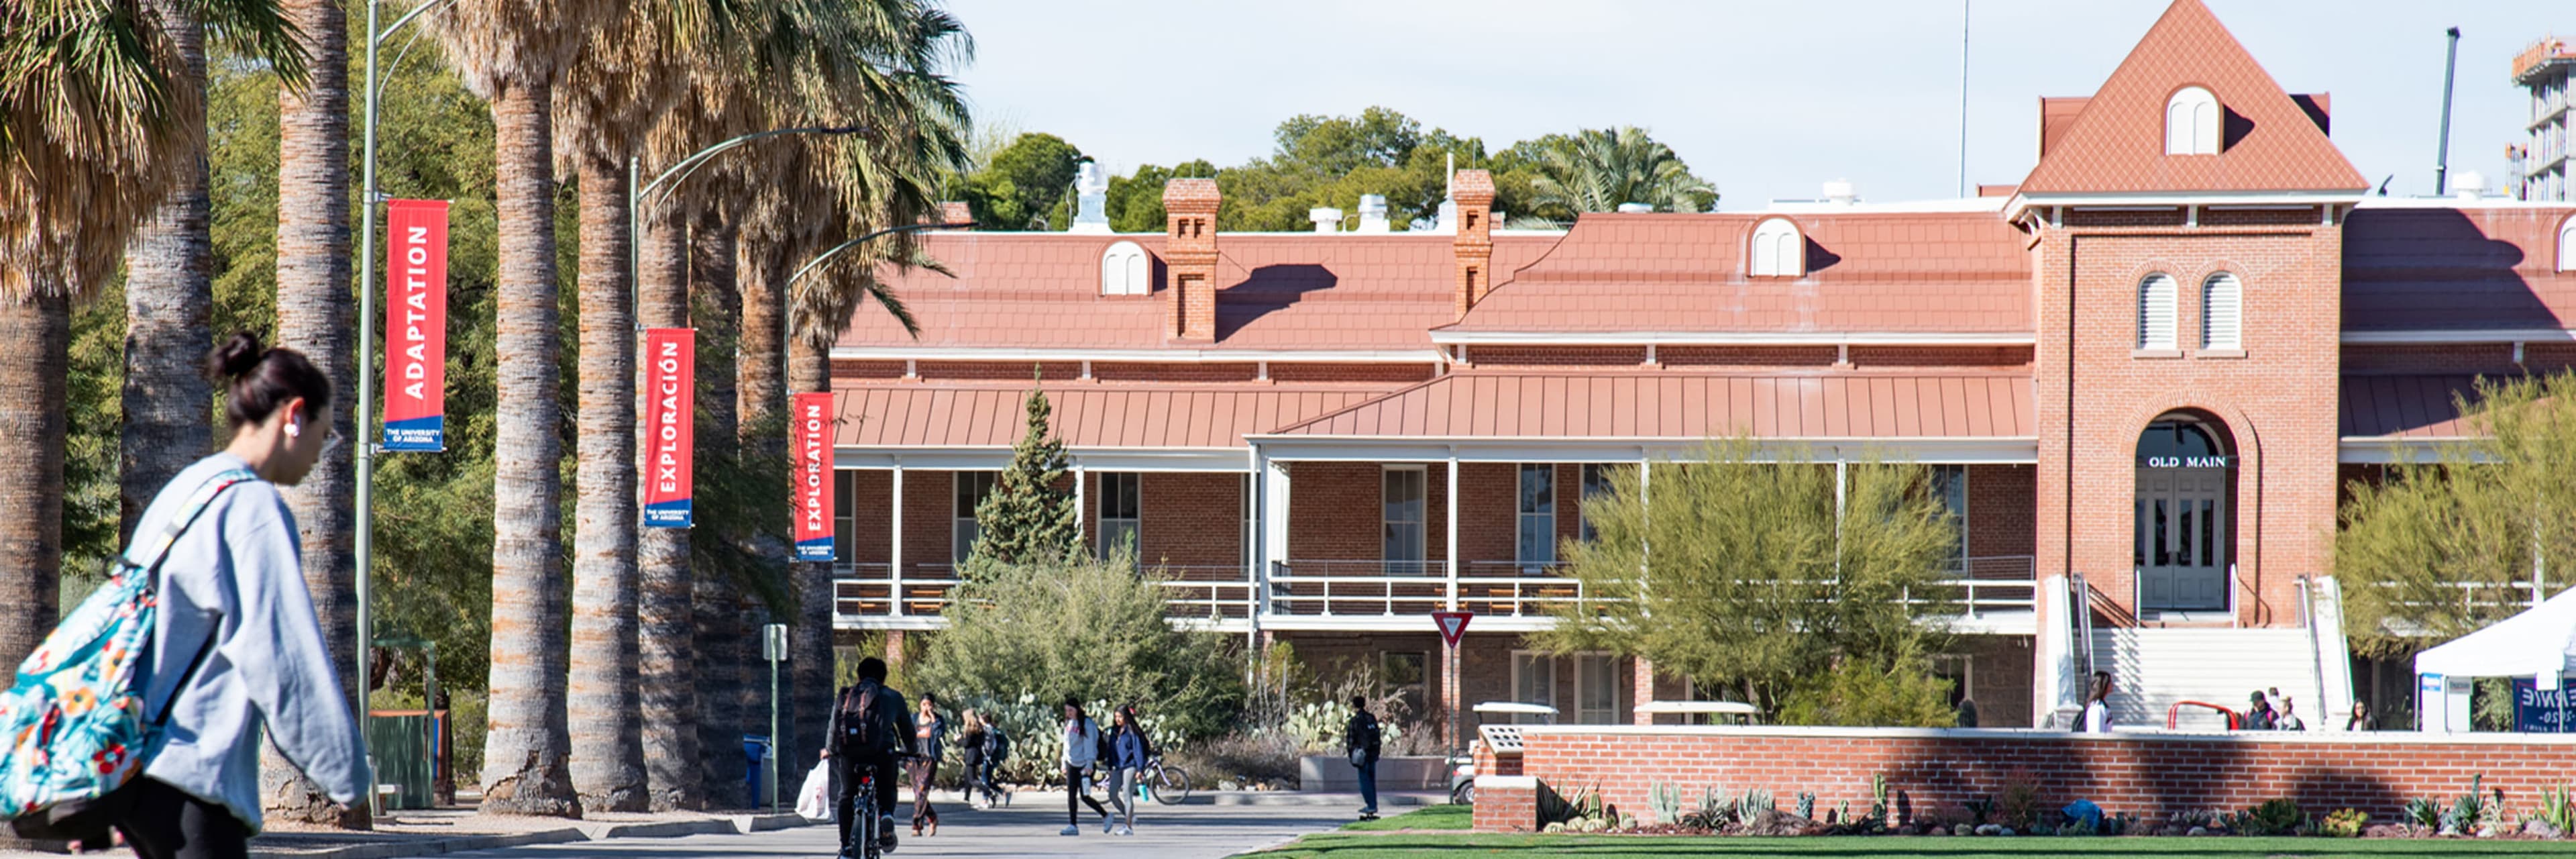 UA campus header 